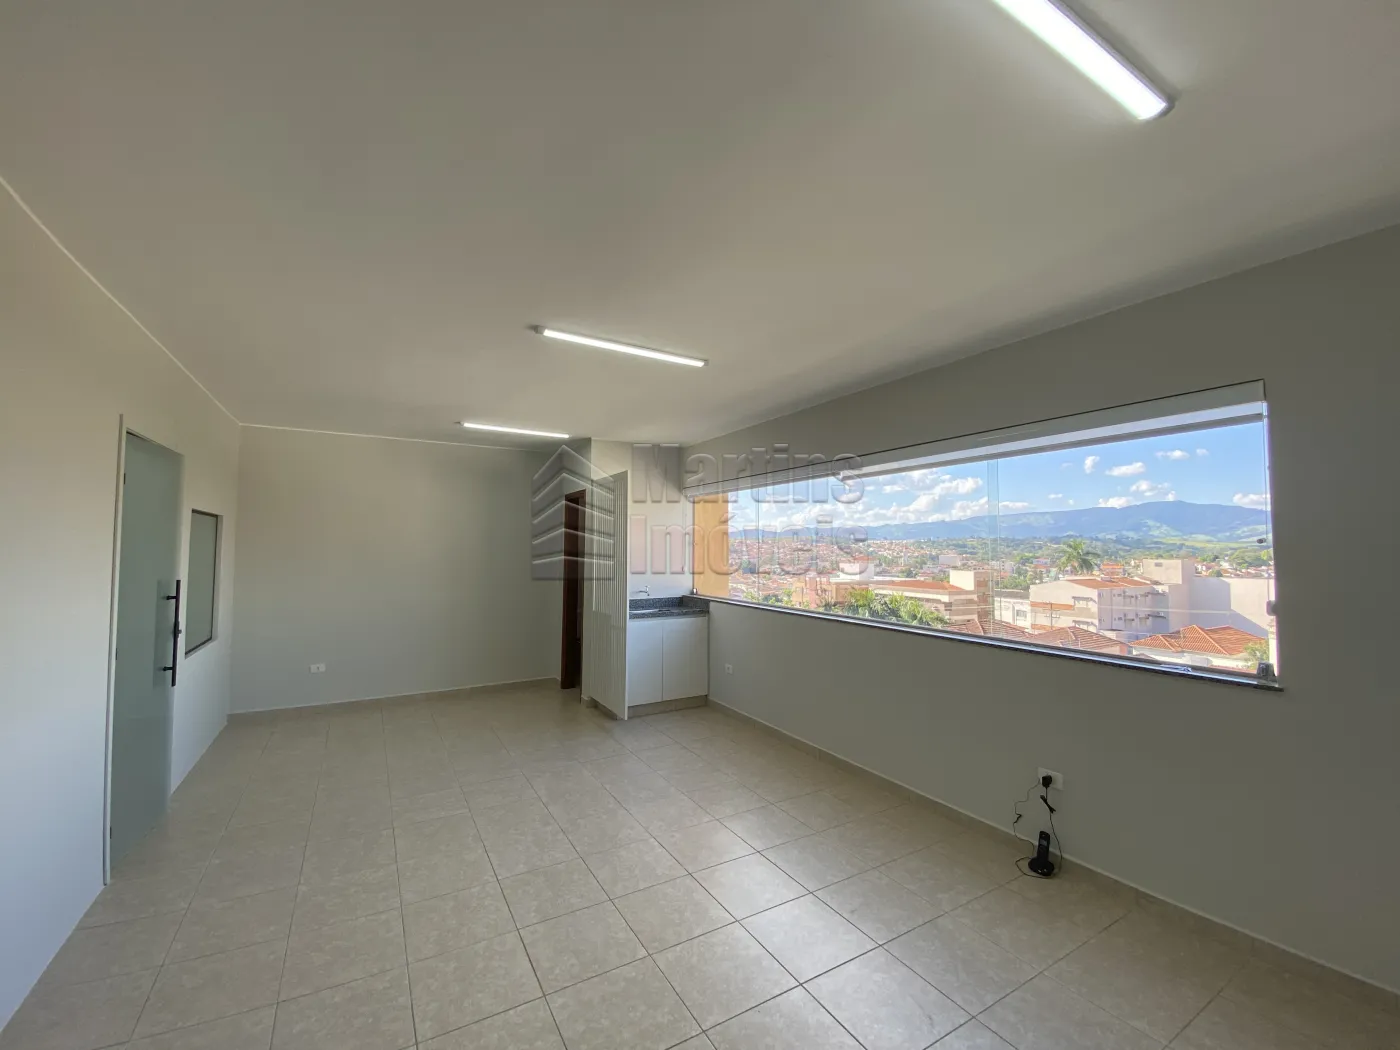 Alugar Comercial / Sala Escritório em Condomínio em São João da Boa Vista R$ 1.216,90 - Foto 7